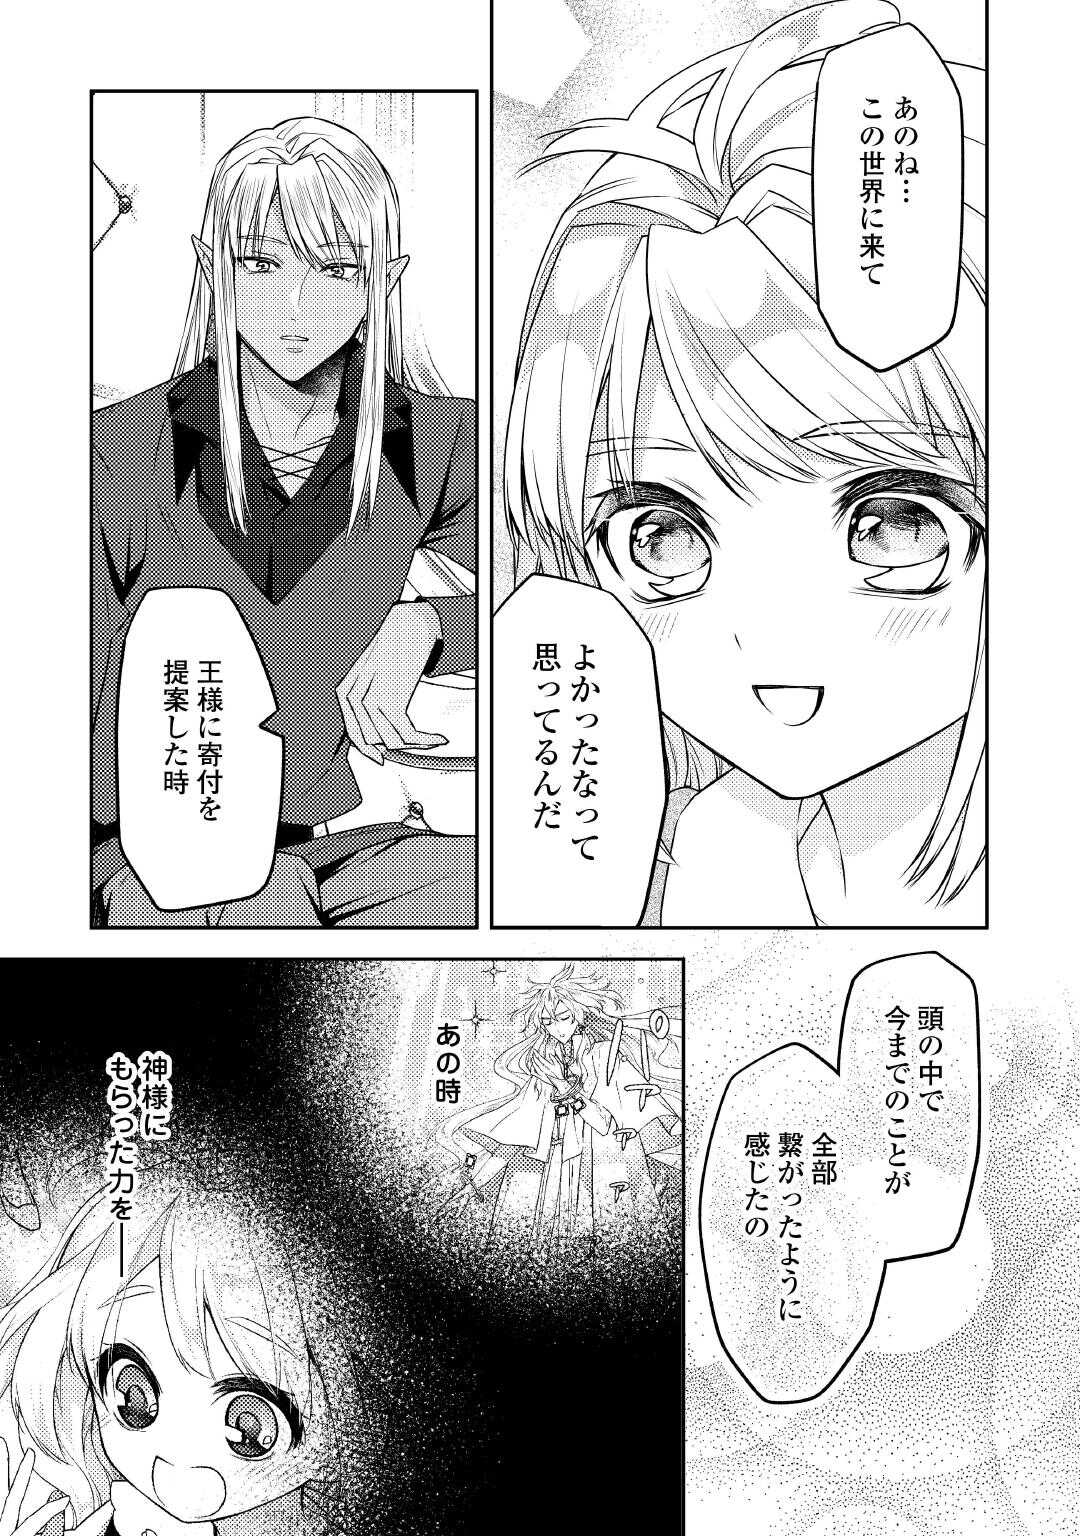 Toaru Chisana Mura No Chi Tona Tanya Ya San - Chapter 20 - Page 9